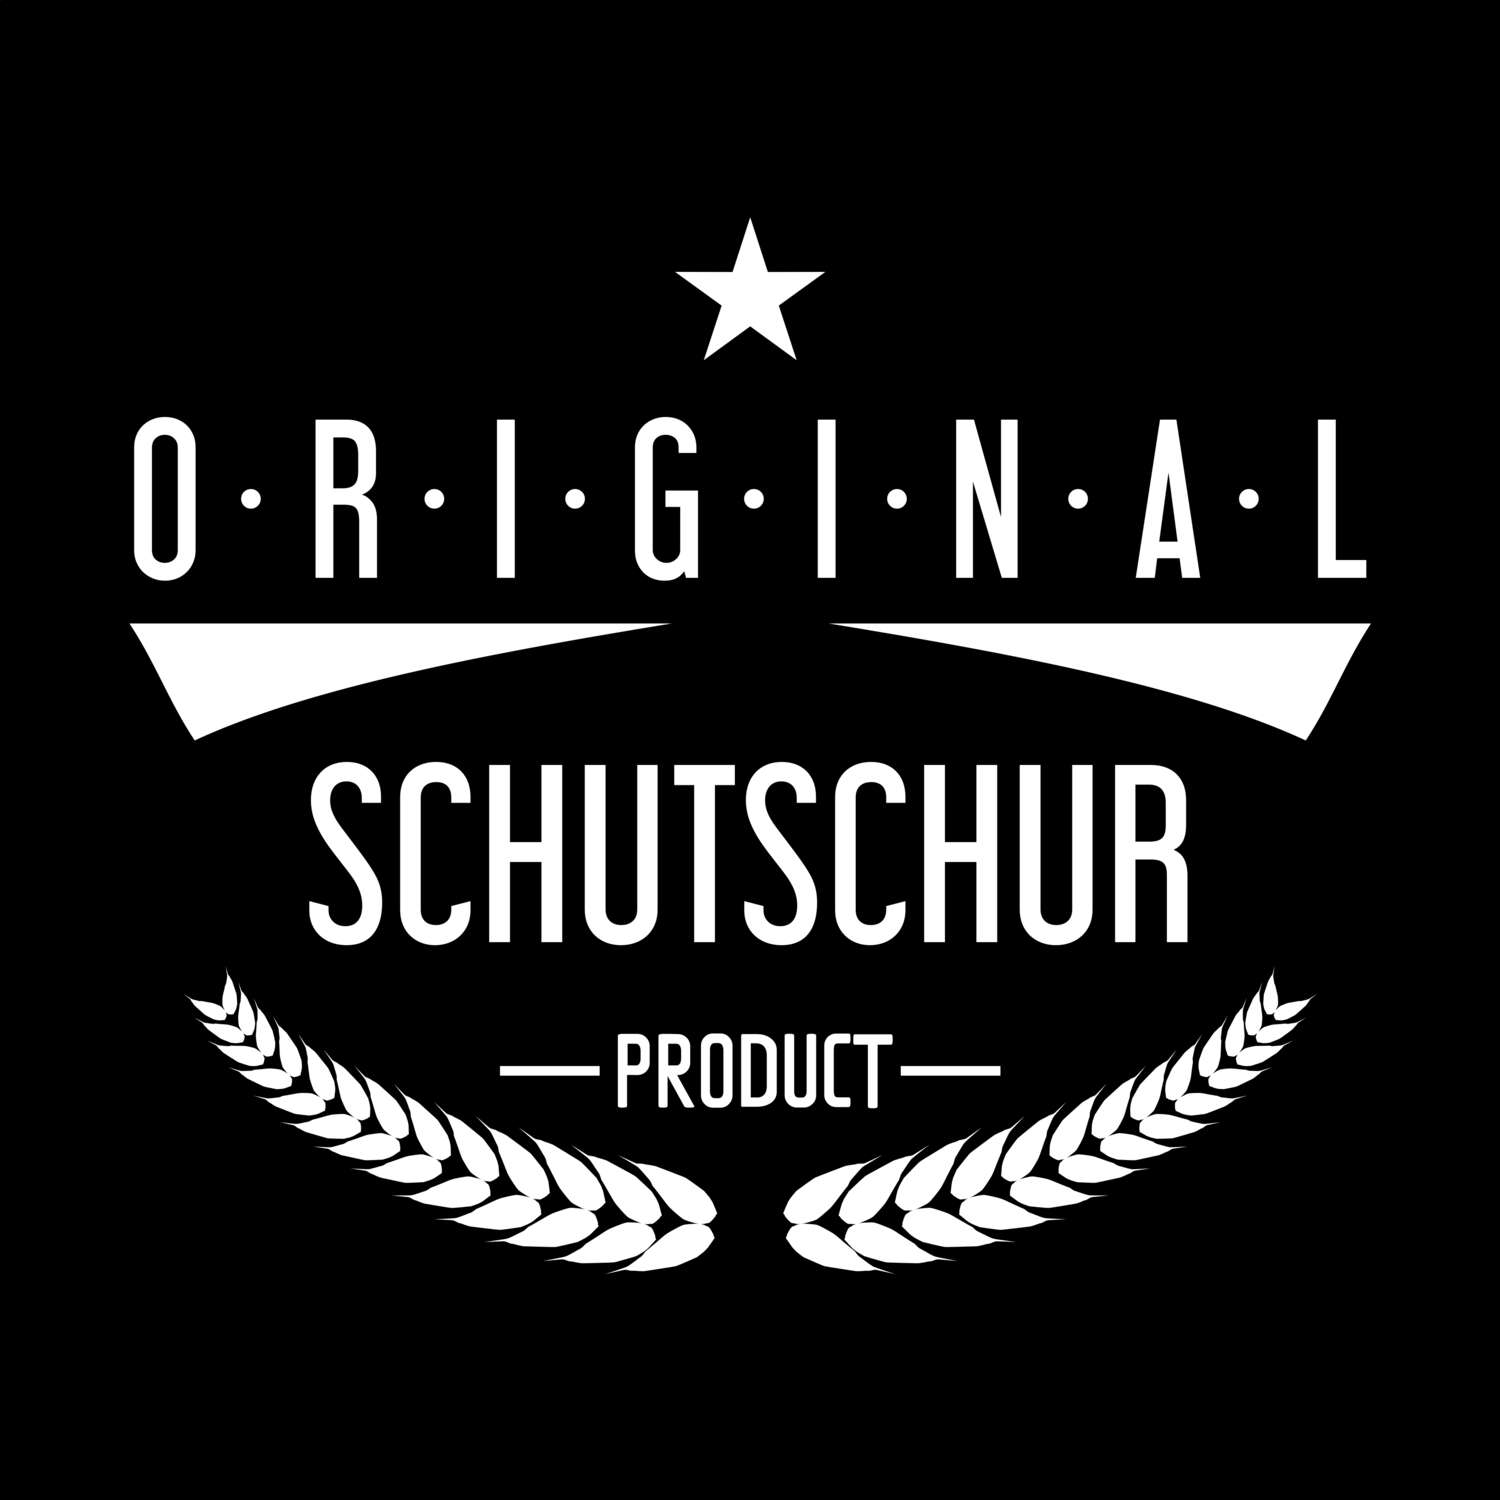 Schutschur T-Shirt »Original Product«